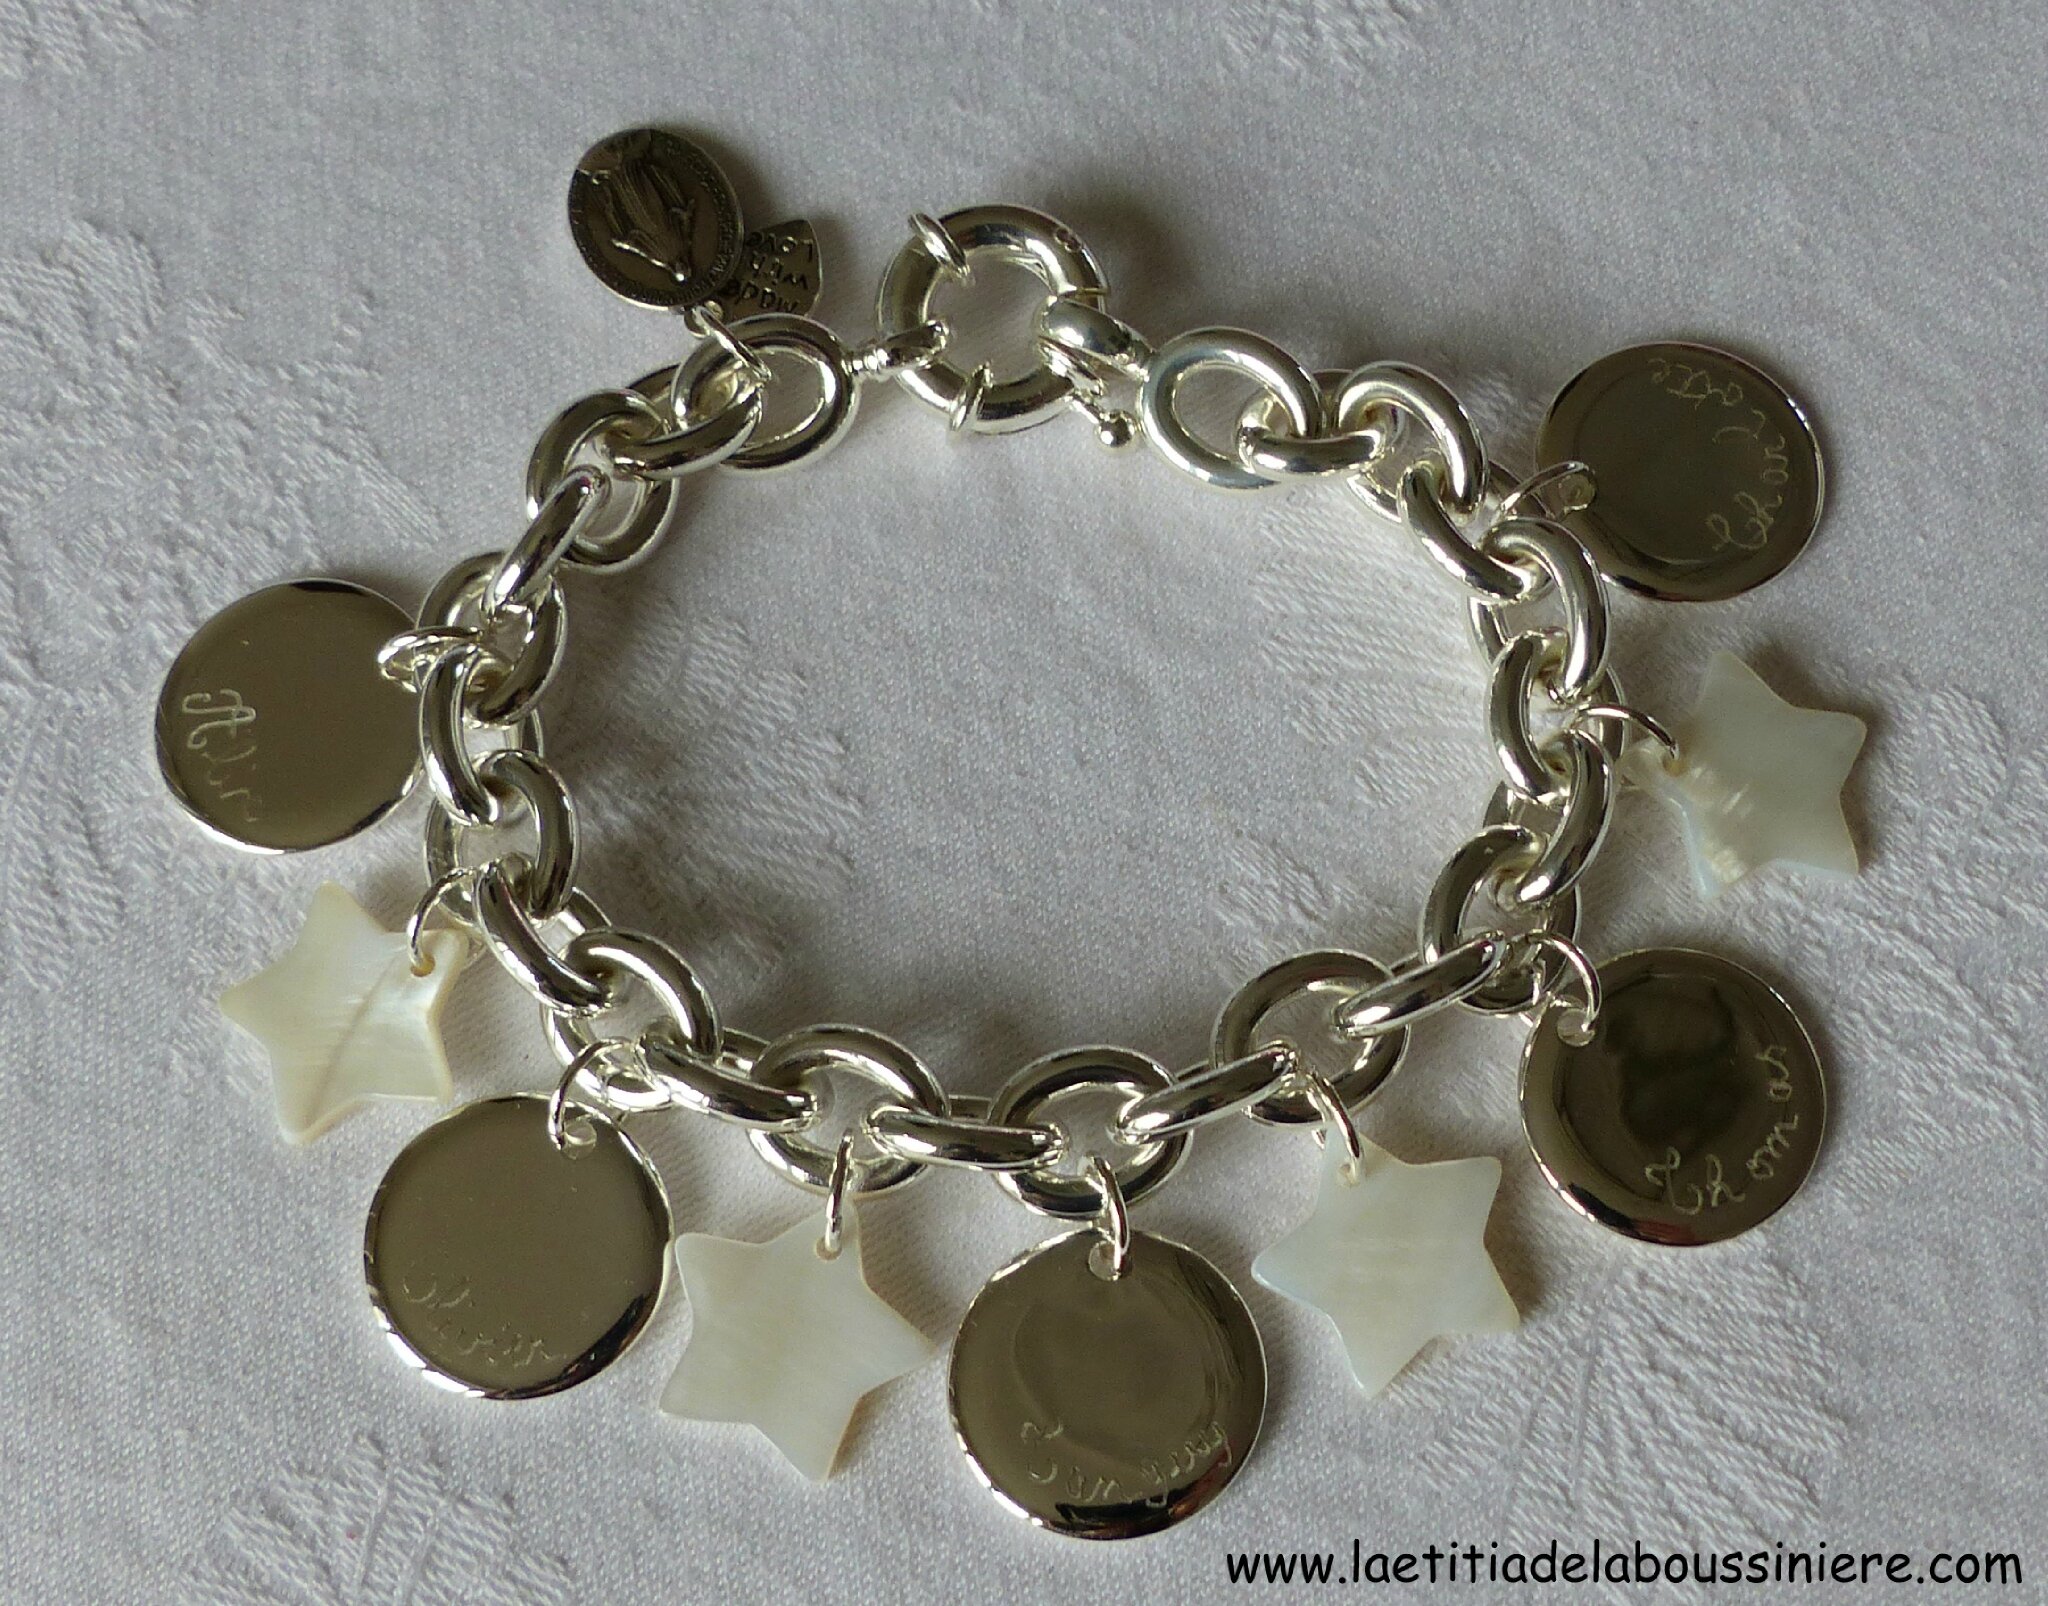 Bracelet sur chaîne plaqué argent ovale composé de 5 médailles en argent massif bombées et 4 étoiles en nacre blanche